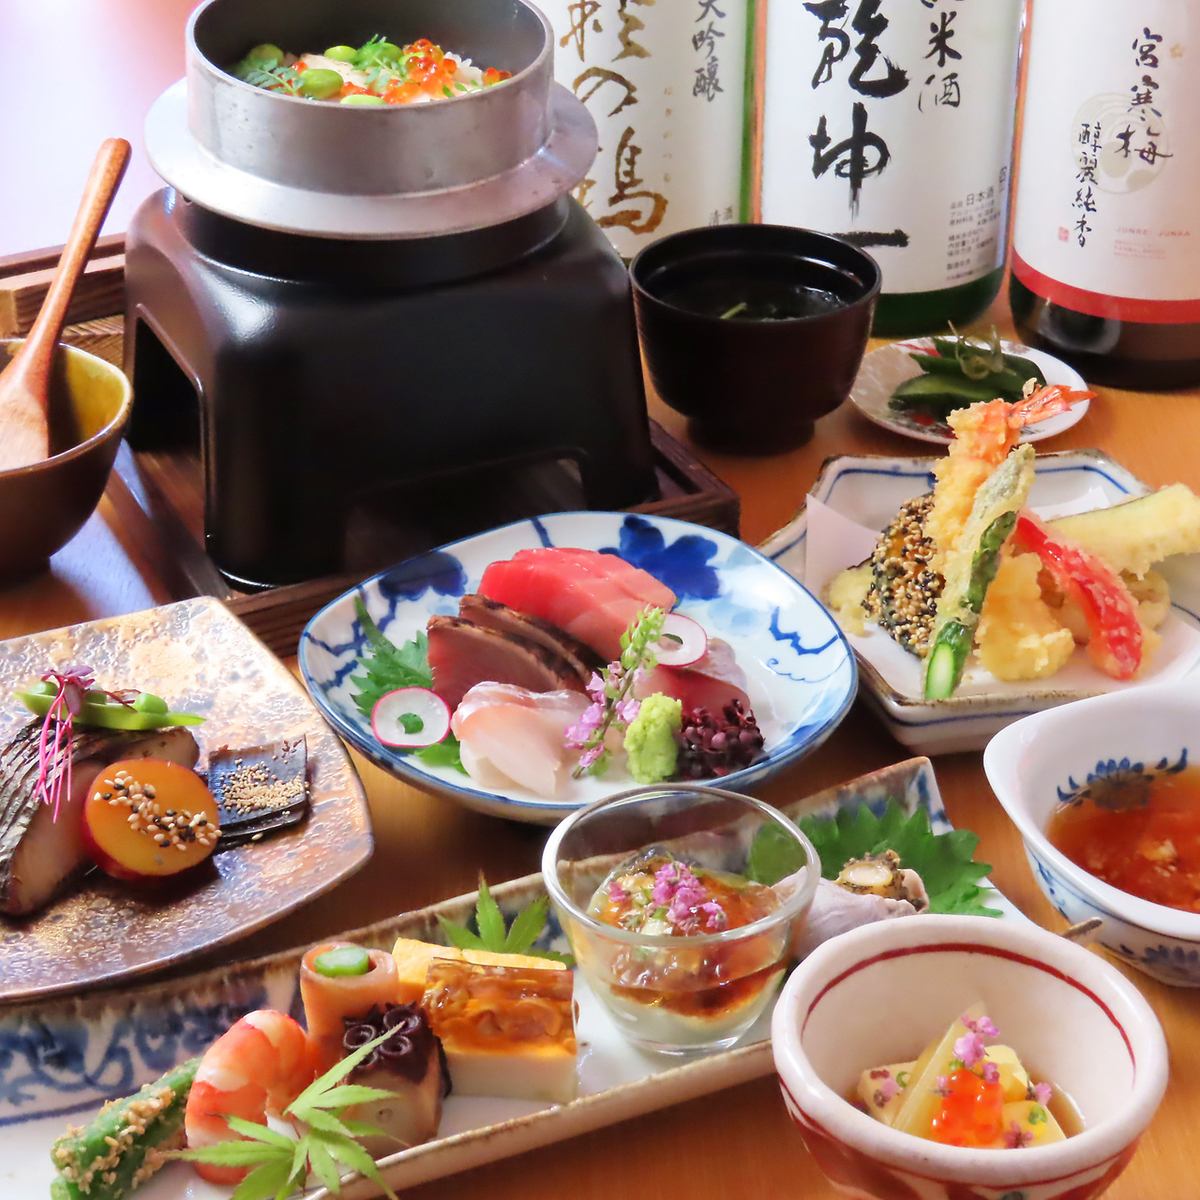 享受注重细节的日本料理。还有推荐用于娱乐和宴会的套餐。